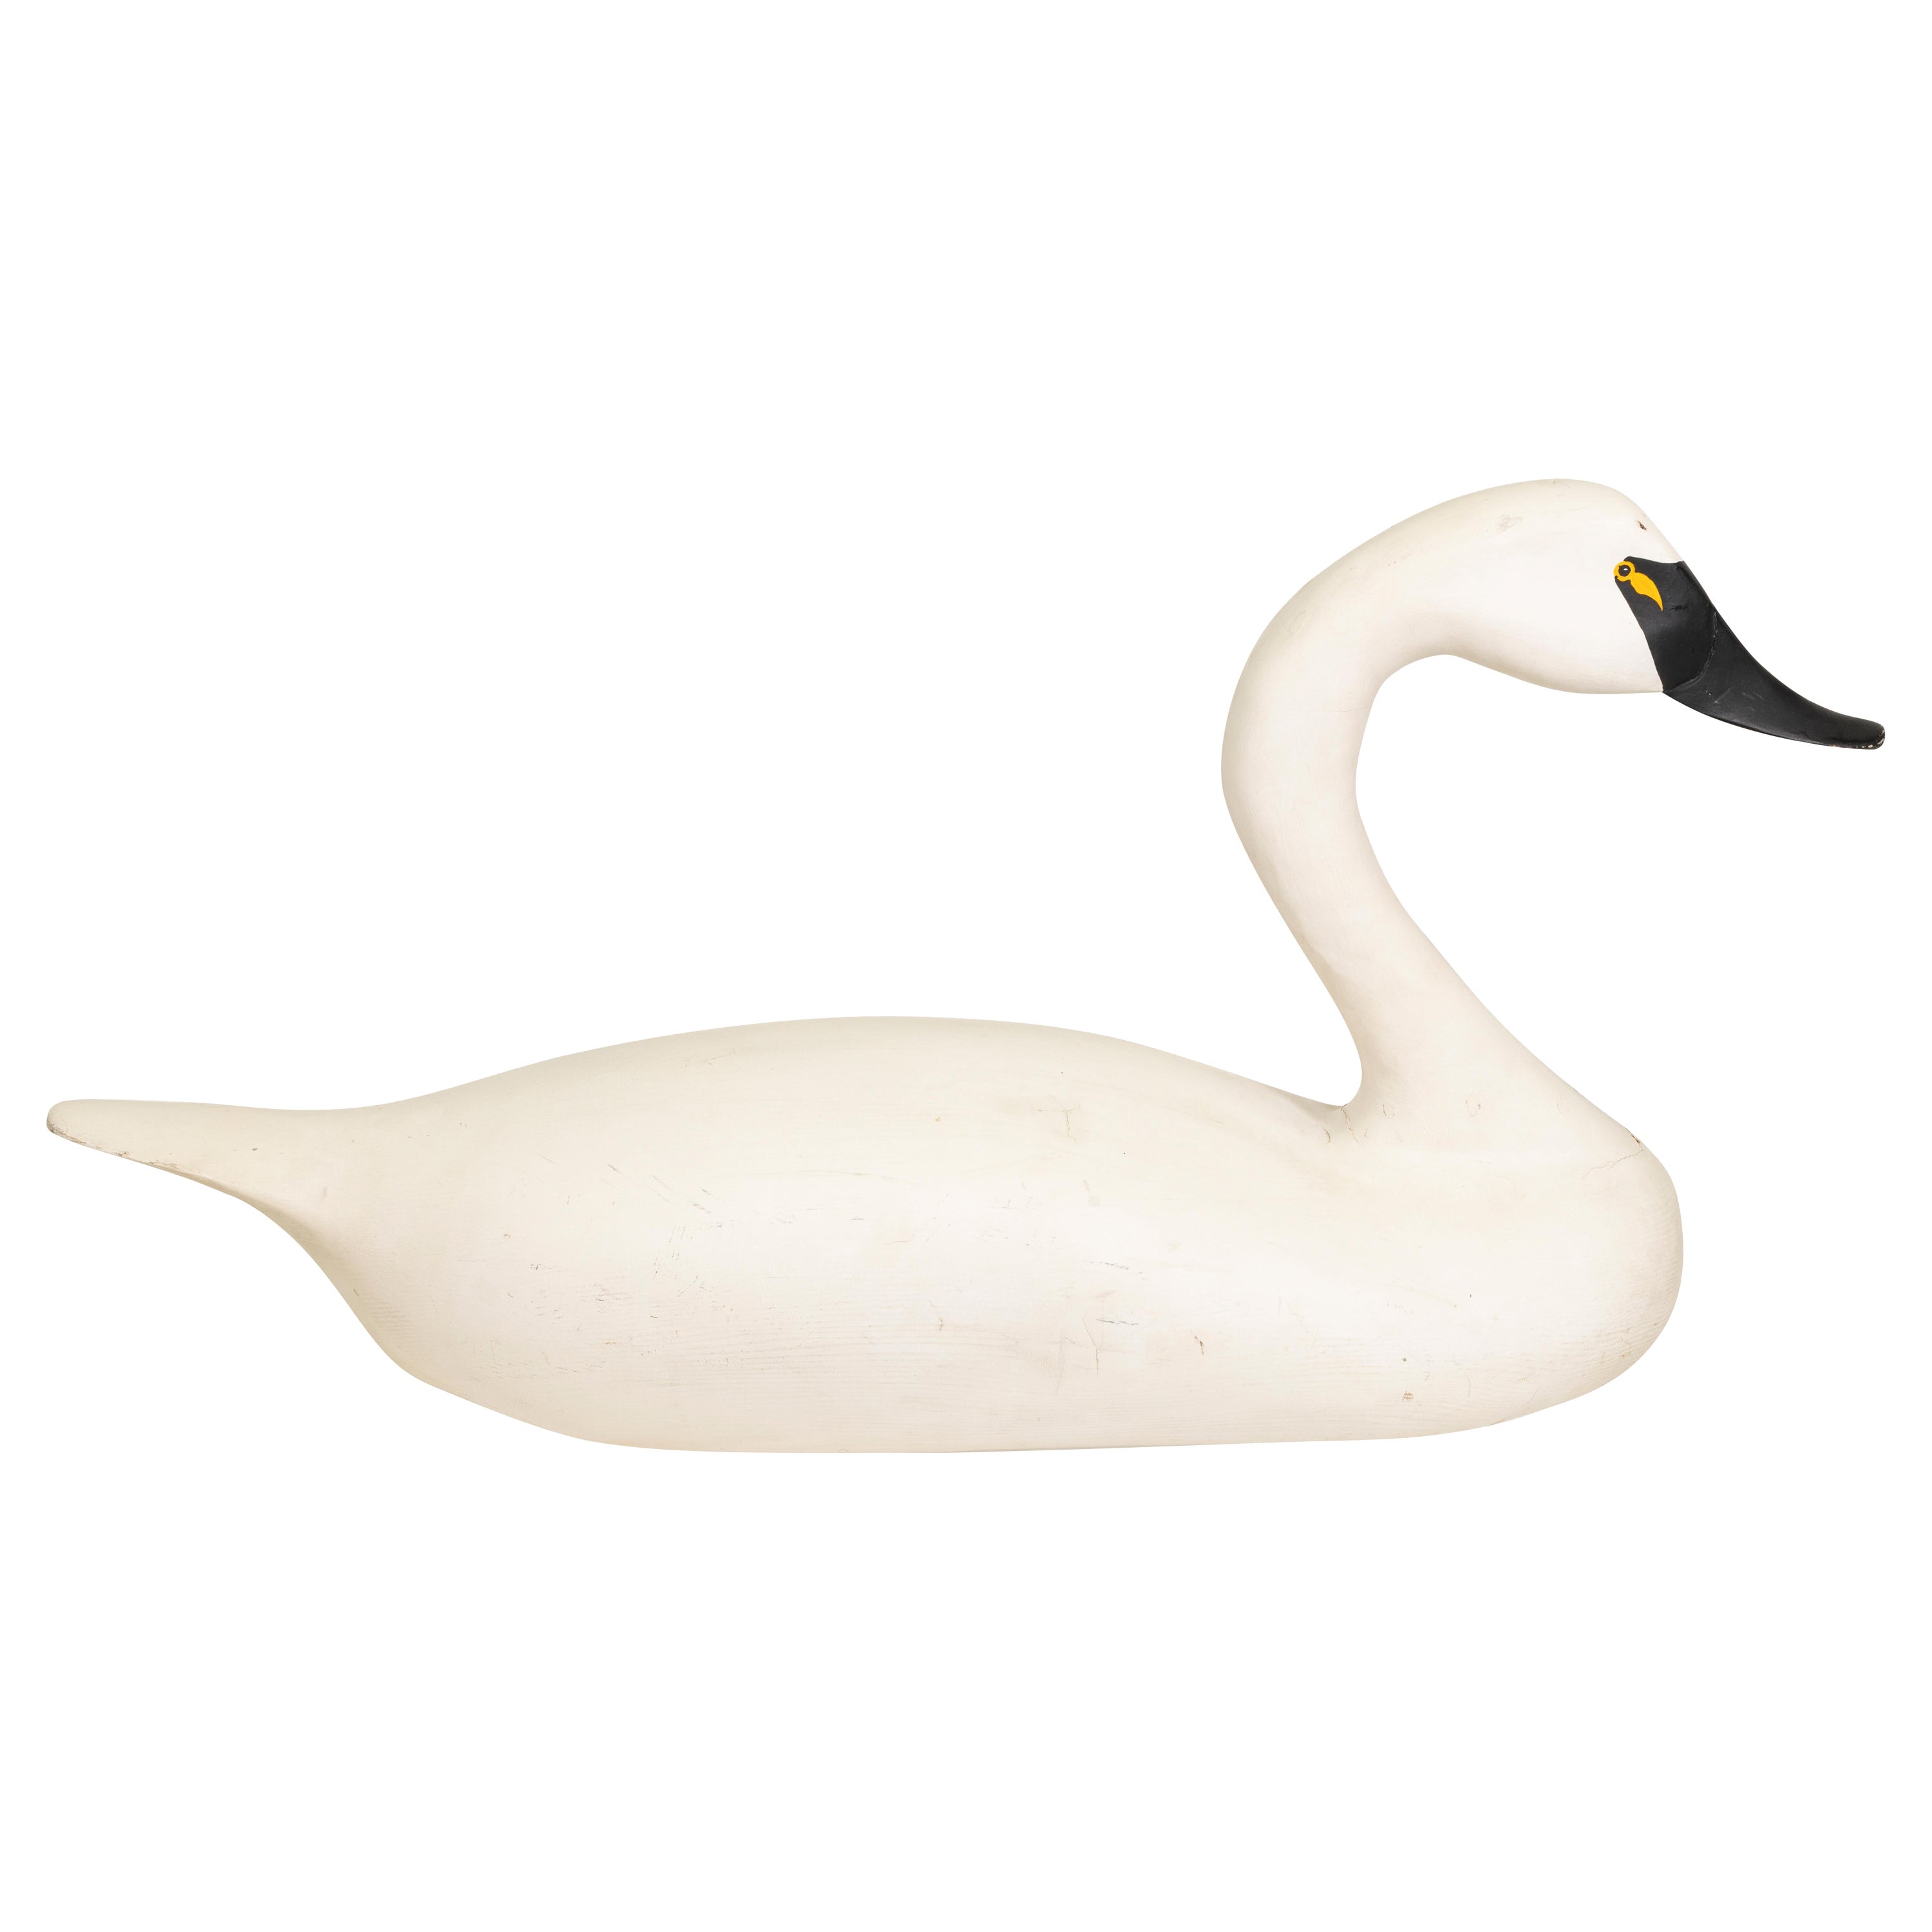 Swan Decoy in Lebensgröße von Jim Pierce